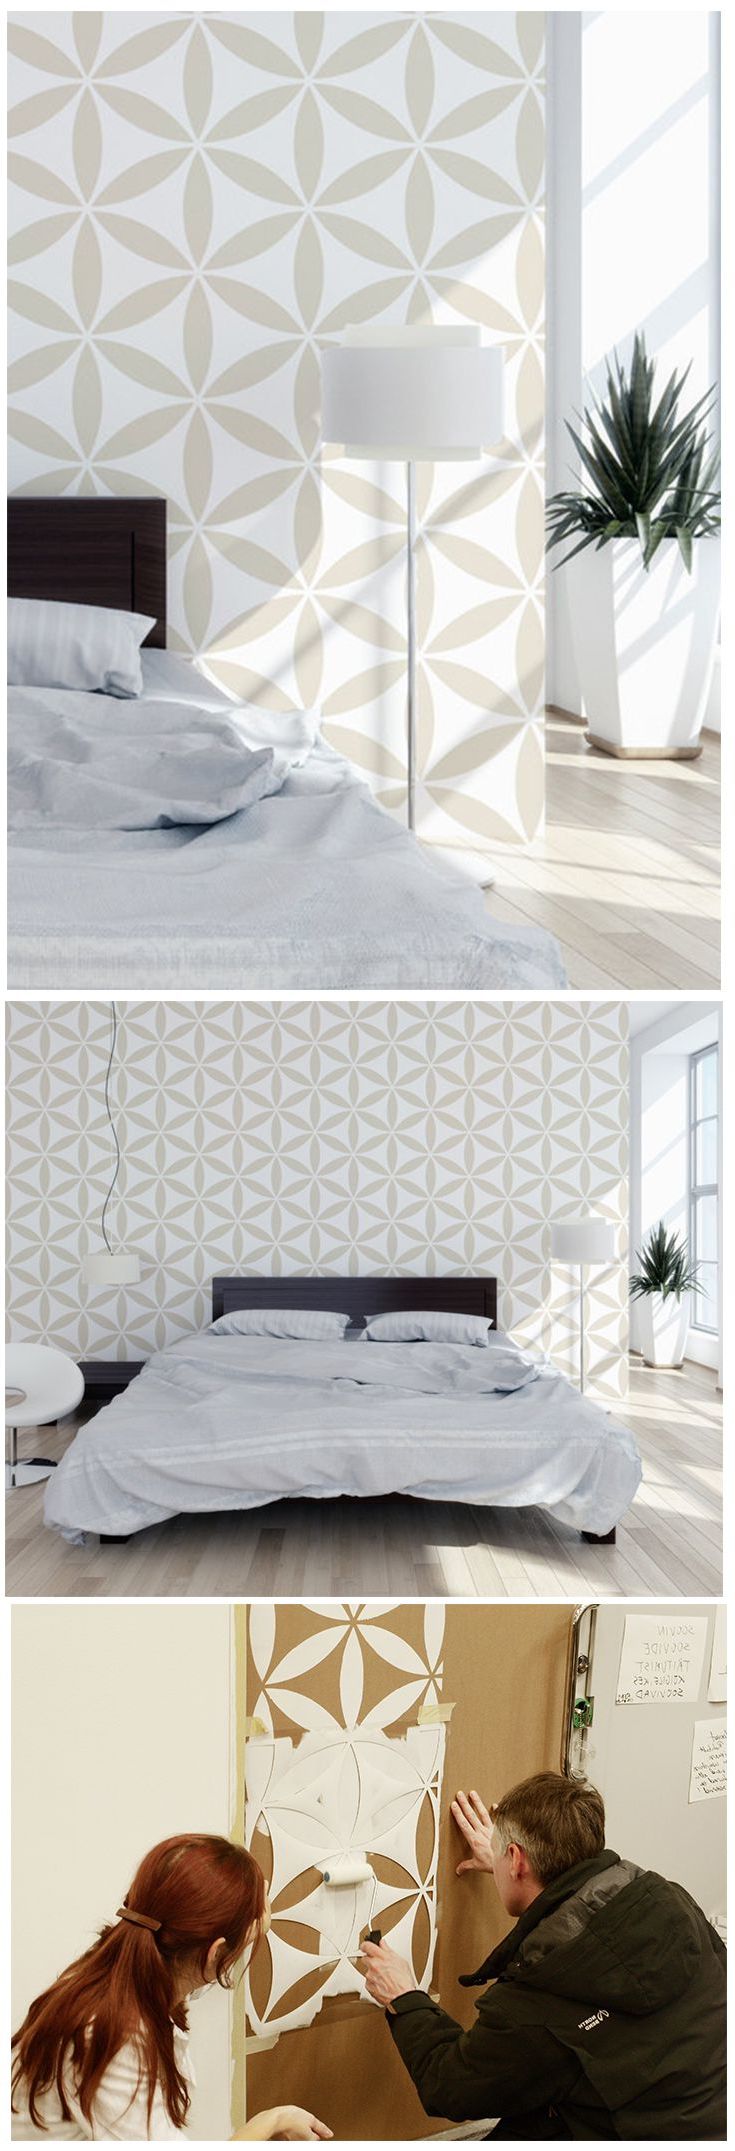 Geometrische Formen als Wandgestaltung im Schlafzimmer